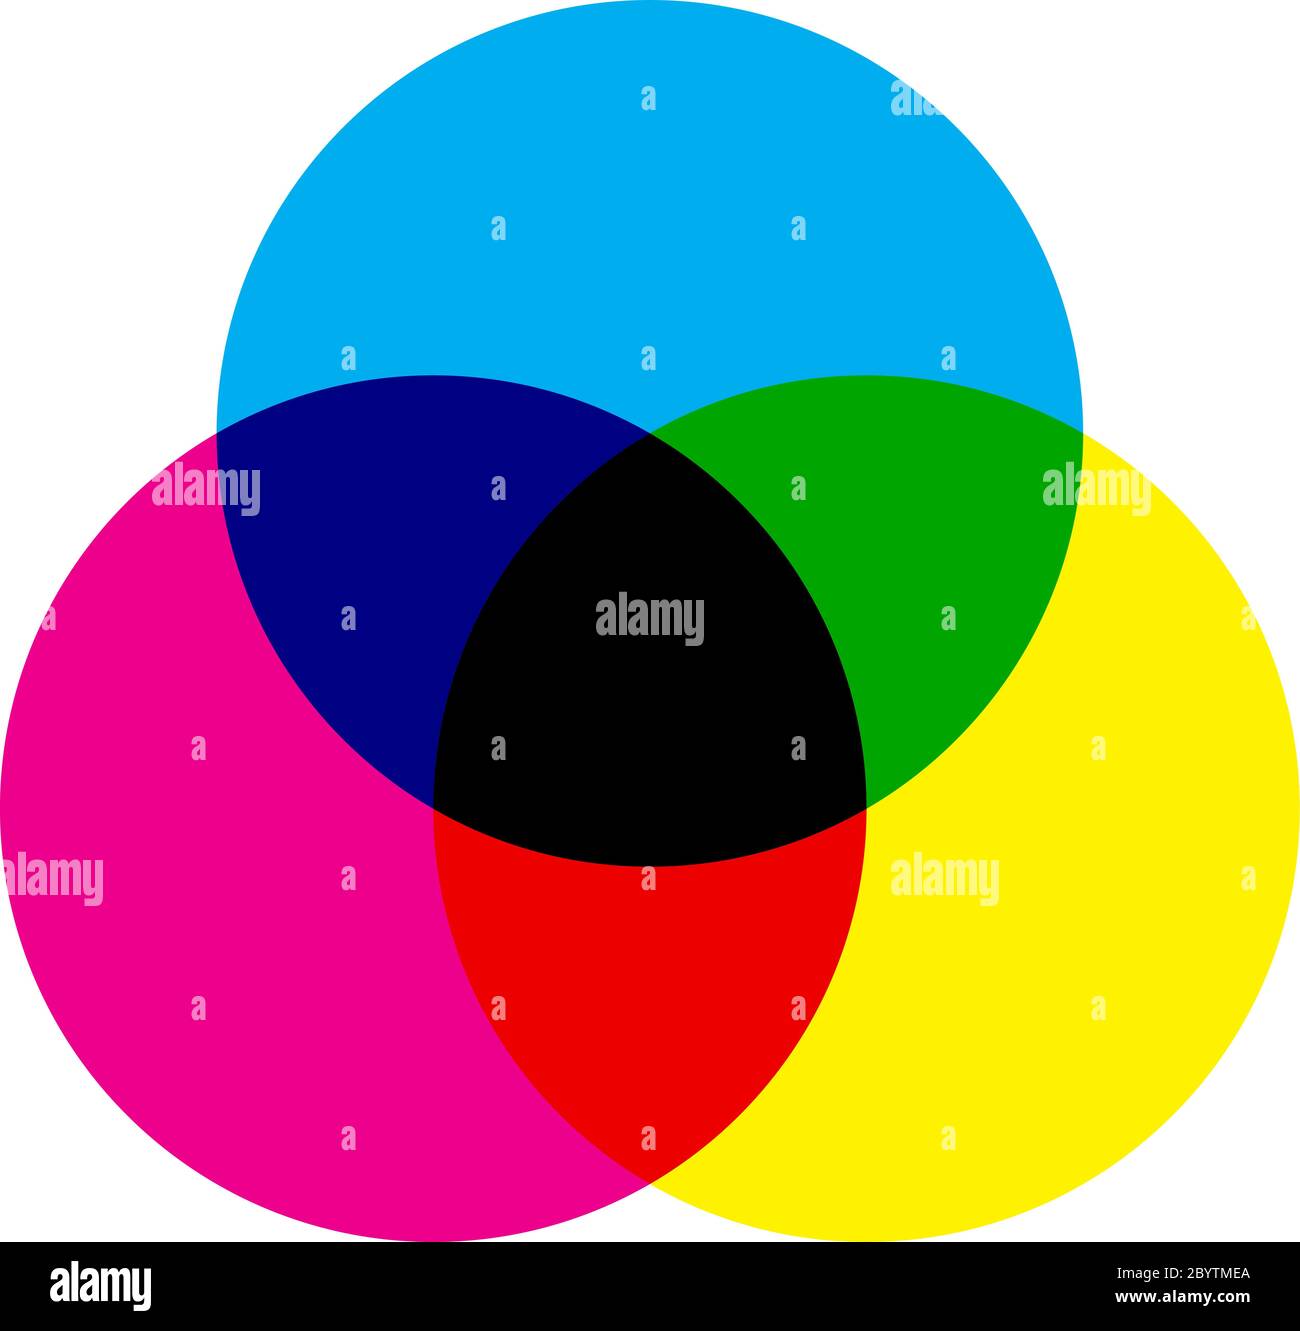 Schema del modello di colore CMYK. Tre cerchi sovrapposti di colore ciano, magenta e giallo. Icona tema di stampa. Illustrazione vettoriale. Illustrazione Vettoriale